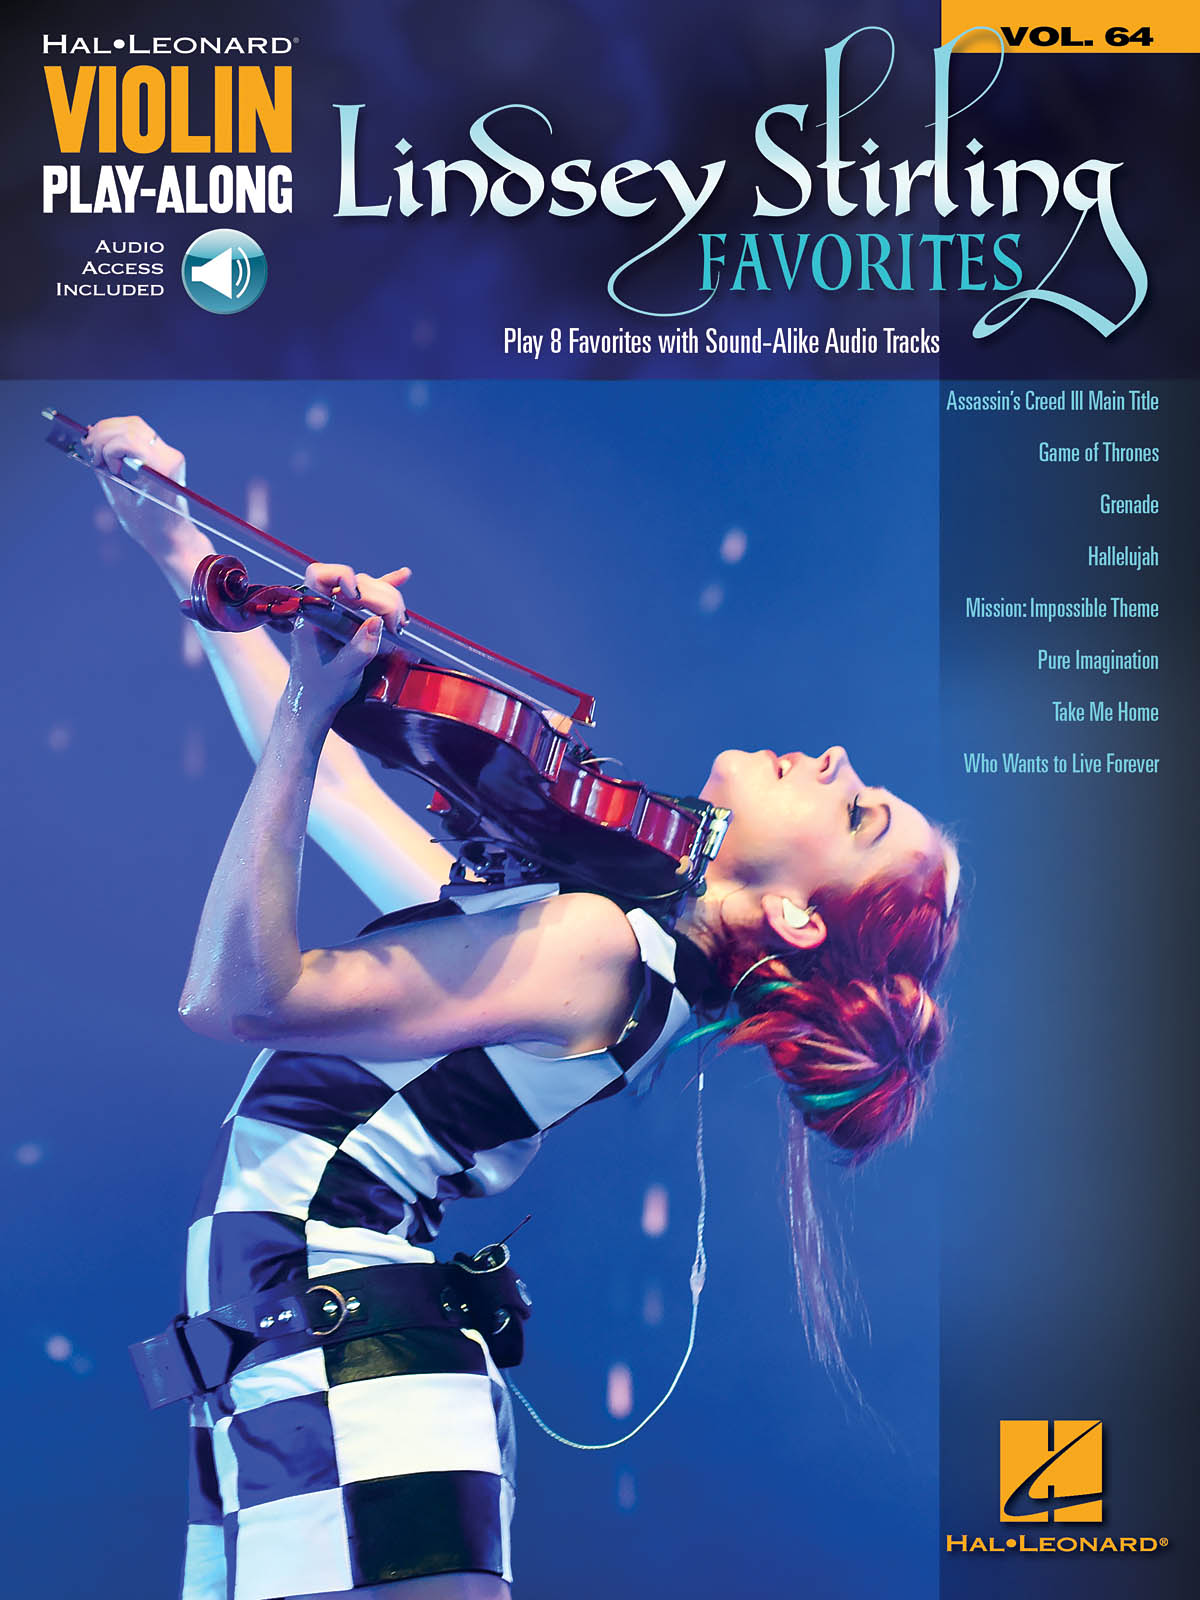 Lindsey Stirling Favorites - Violin Play-Along Volume 64